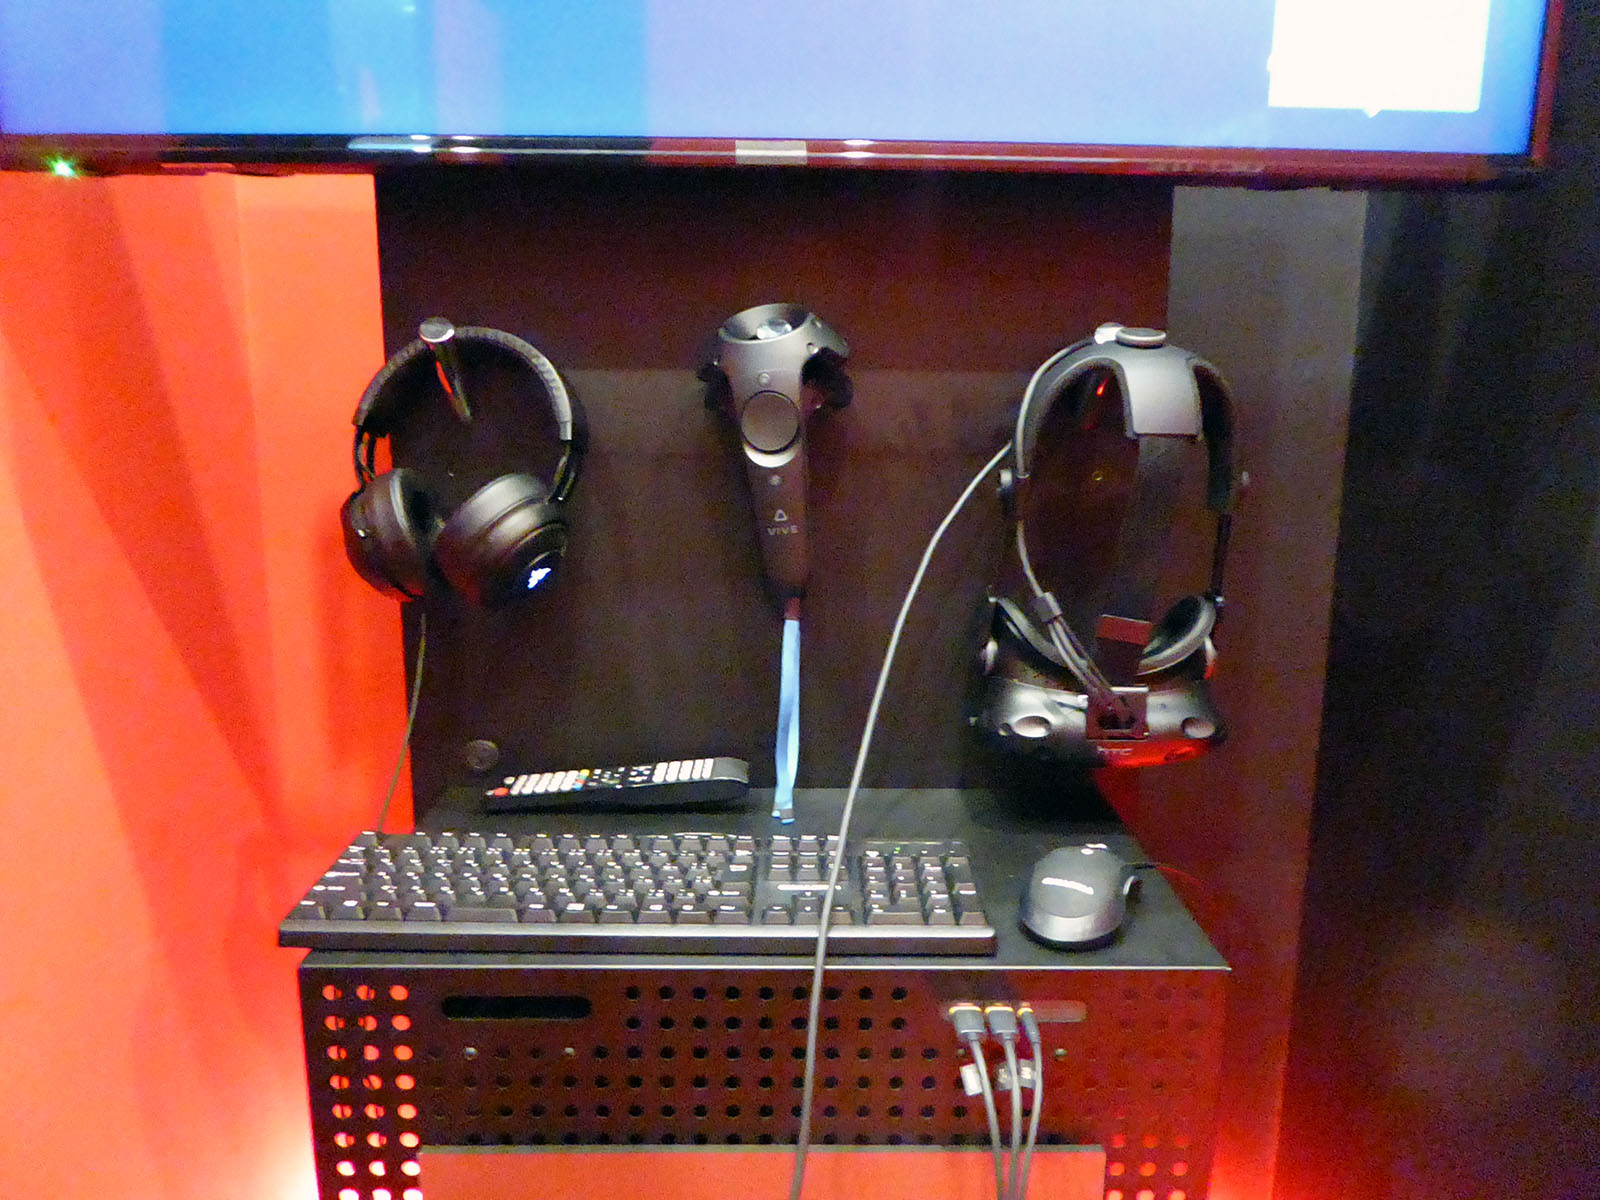 HTC Vive VRヘッドセットおよびコントローラ、ヘッドホンなどが用意されている。ヘッドホンは7.1chバーチャルサラウンドに対応する「Razer Kraken 7.1 V2」を採用